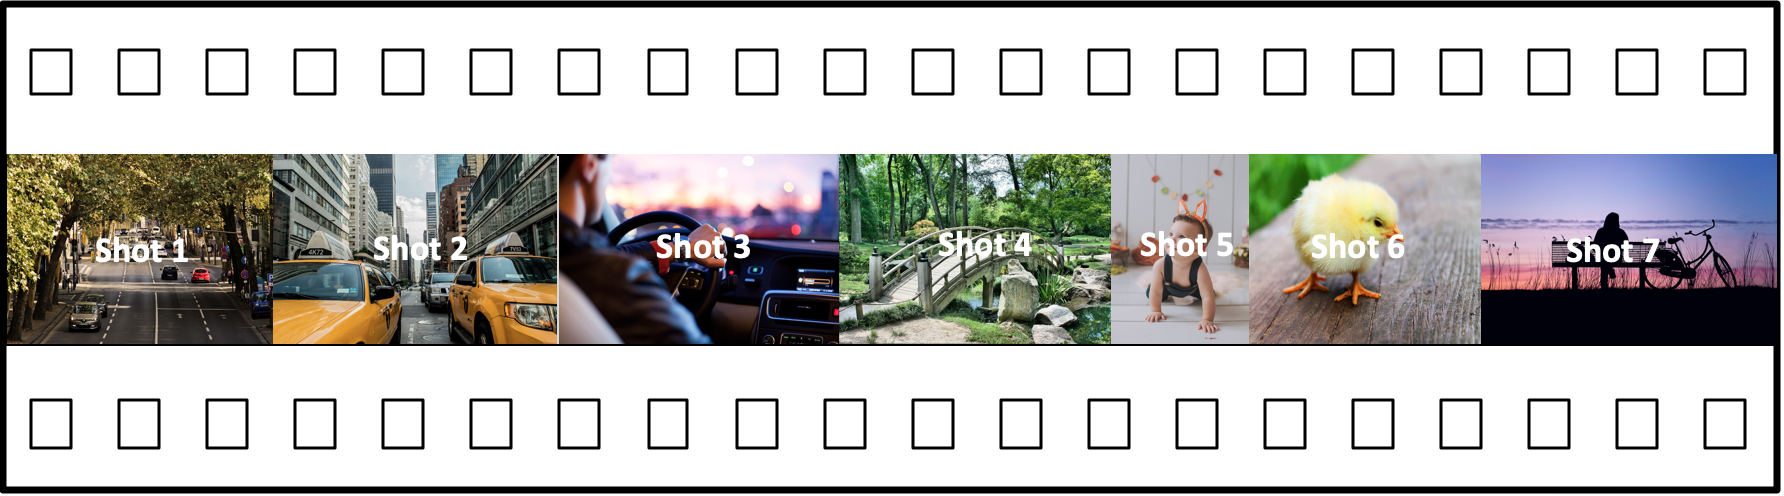 Sete fotos numeradas mostrando ruas da cidade, painel do carro, caminho na floresta, uma criança, um pintinho, lago ao pôr do sol com silhueta de fotógrafo.